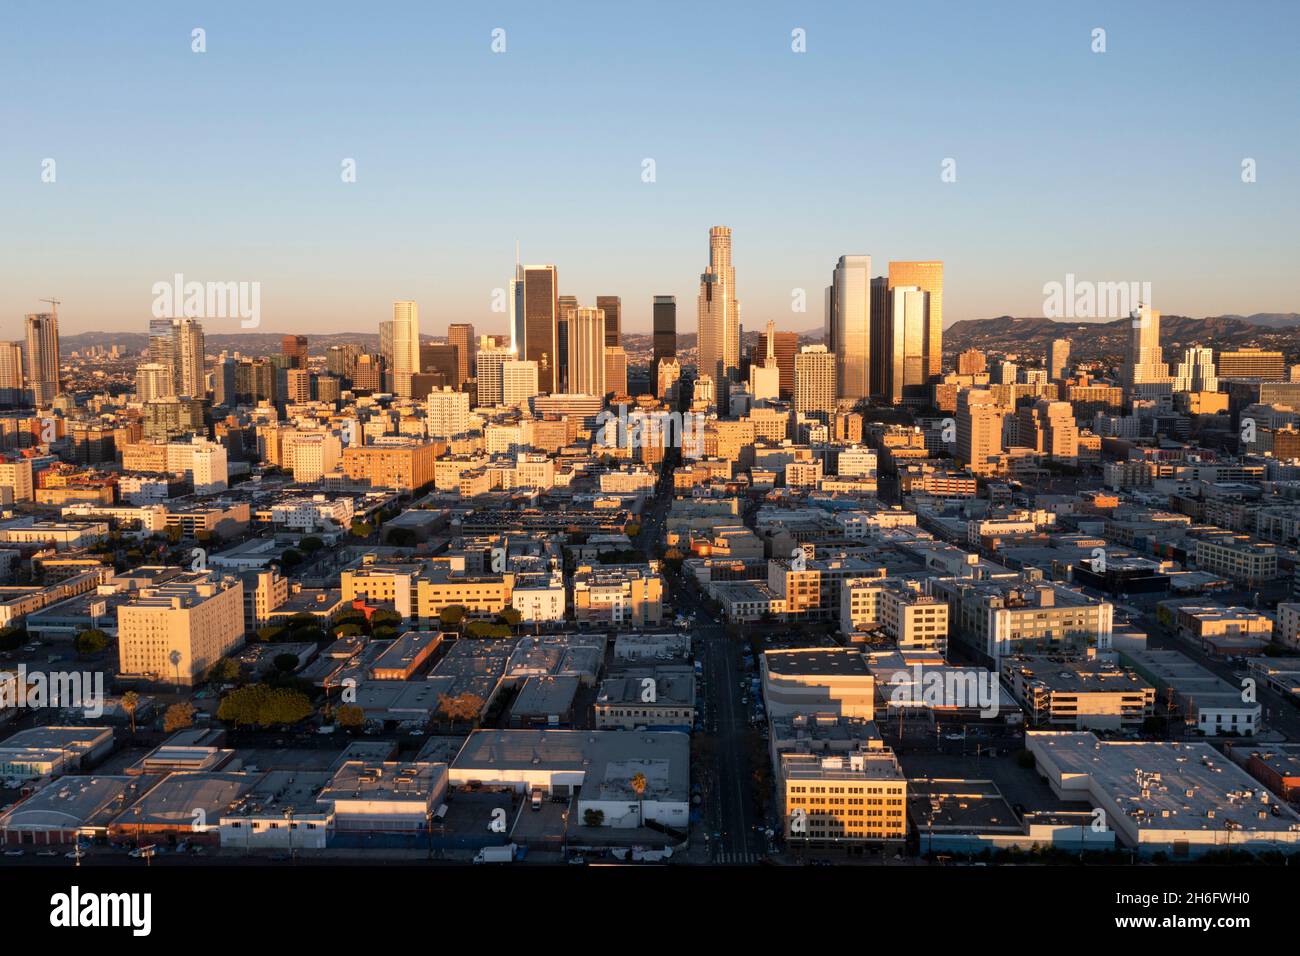 Vue aérienne du centre-ville de Los Angeles baignée de lumière dorée au lever du soleil Banque D'Images